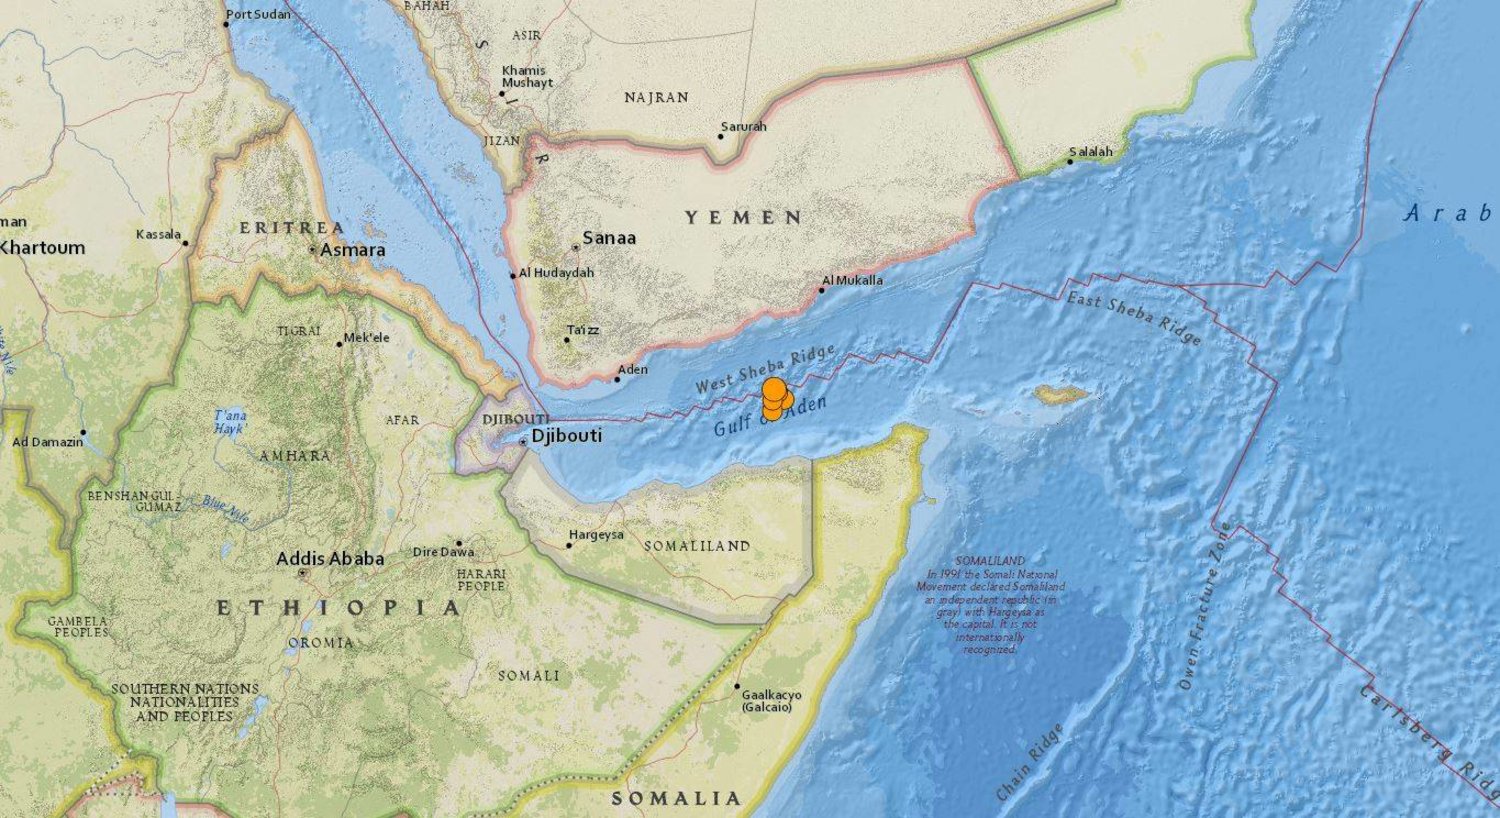 خريطة نشرتها هيئة المسح الجيولوجي الأميركي لعدة هزات أرضية ضربت خليج عدن اليوم